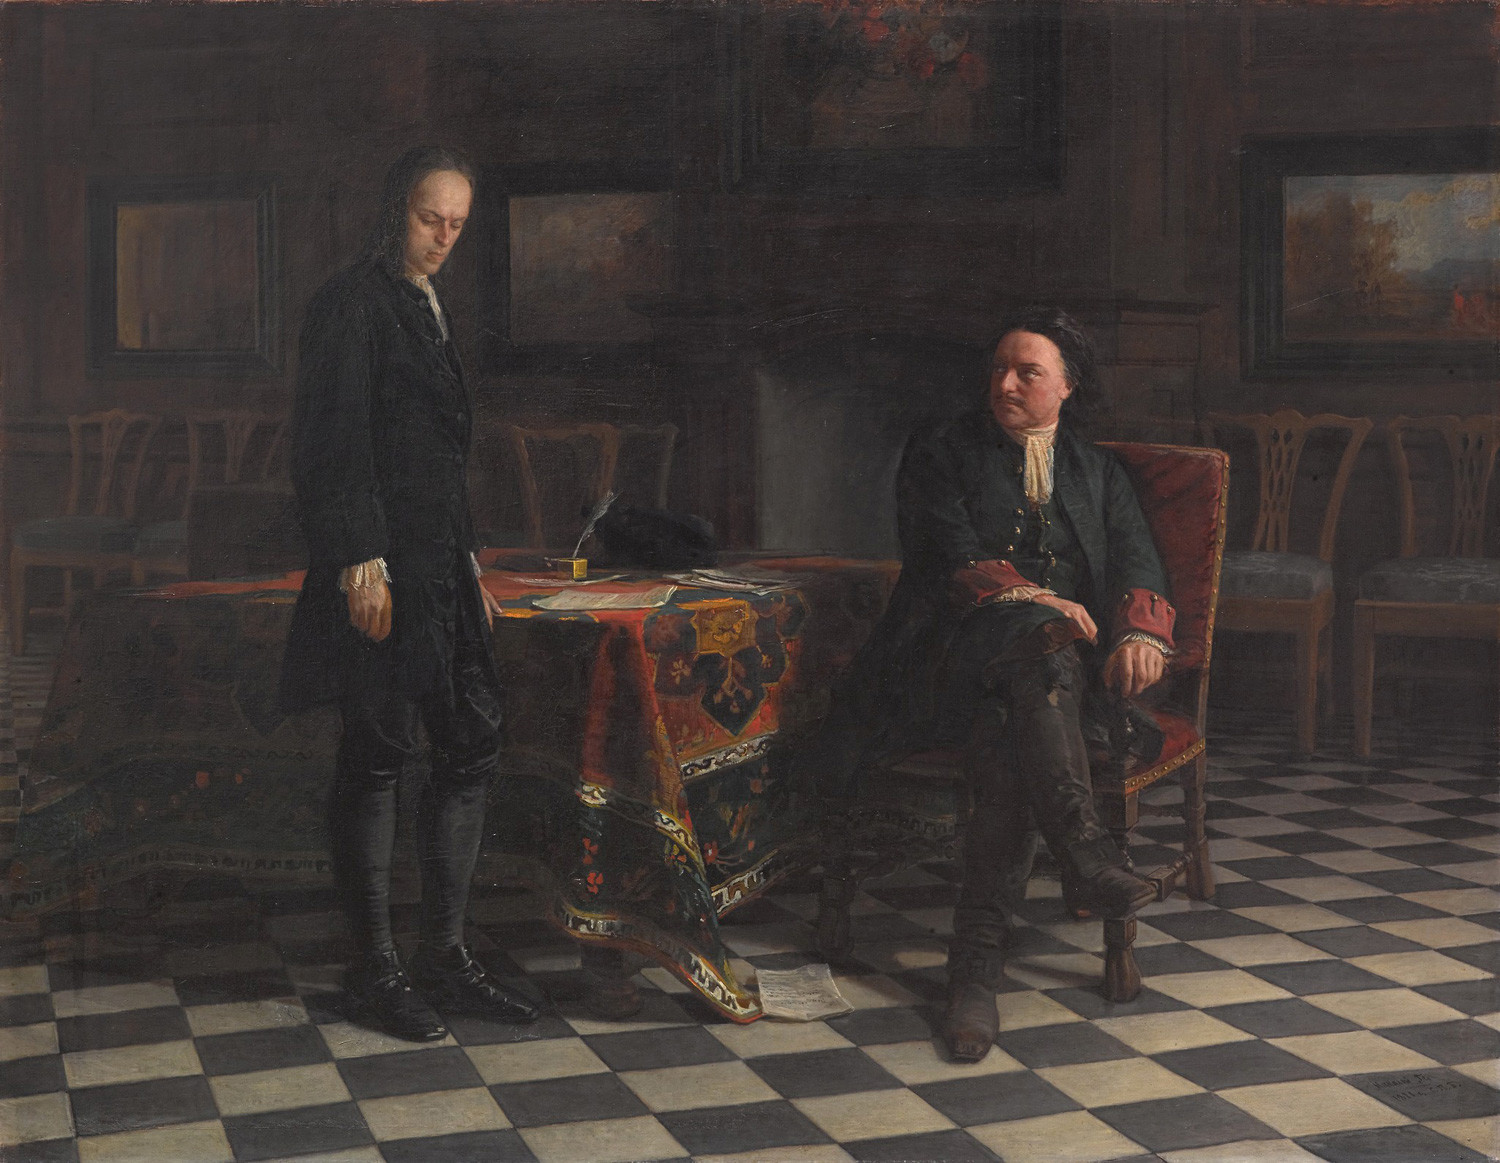 Peter der Große verhört Zarewitsch Alexej Petrowitsch in Peterhof von Nikolai Ge, 1871